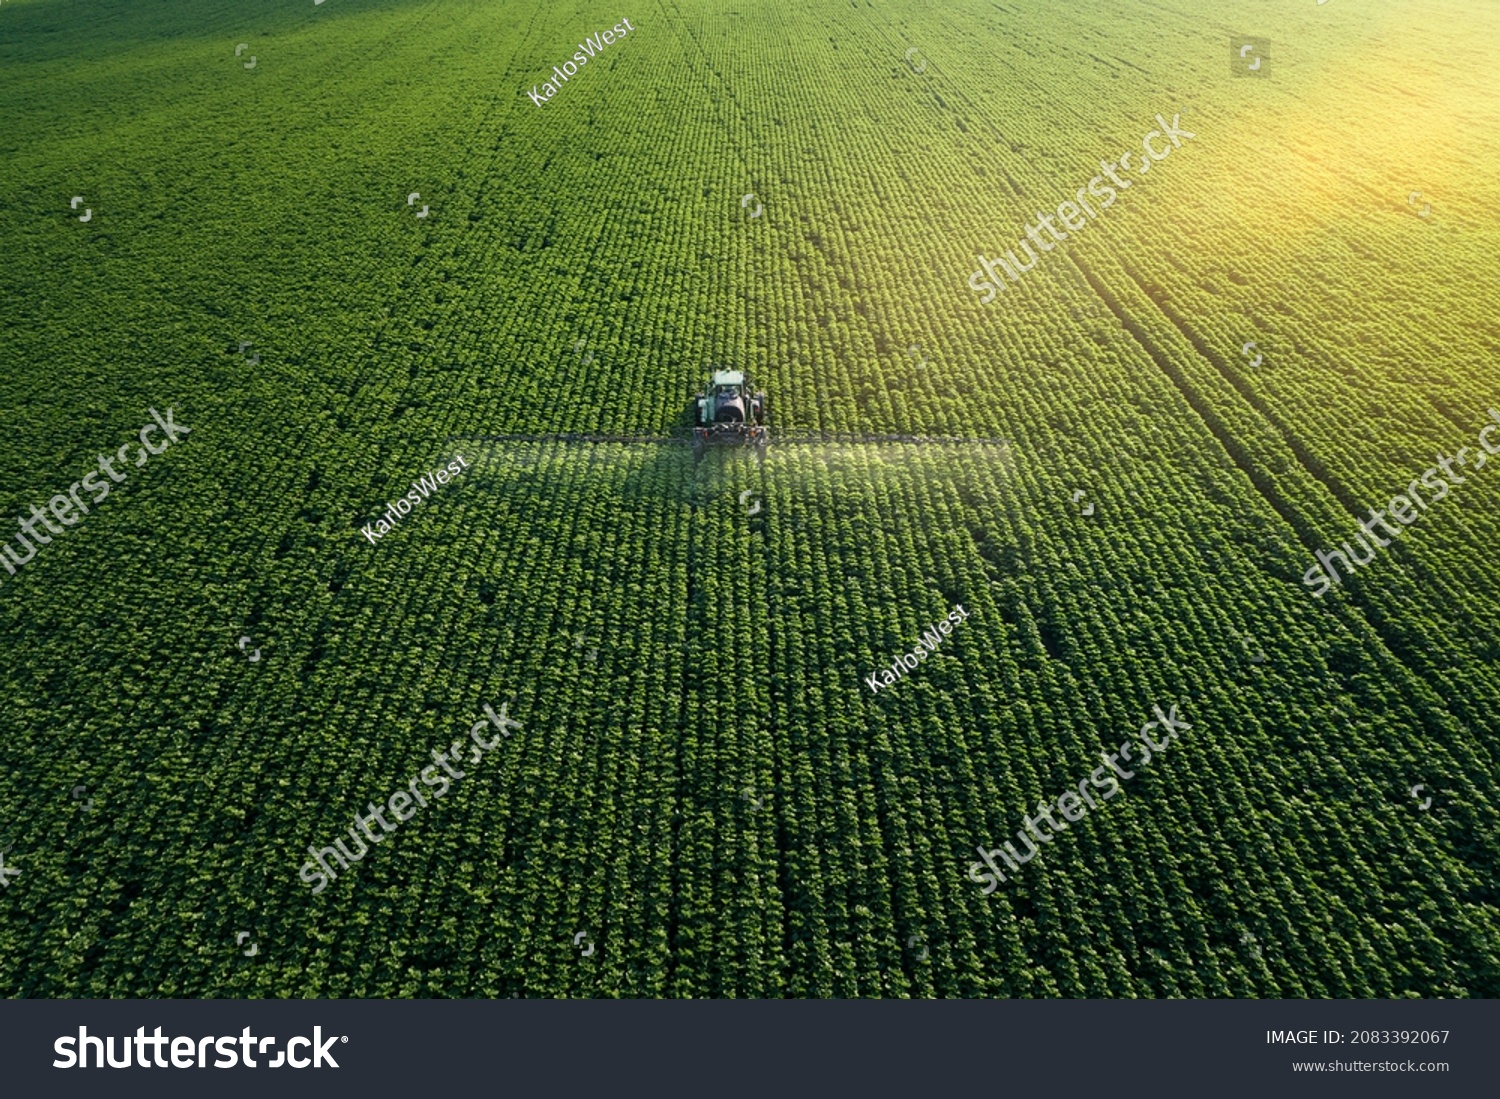 Sorge für die Kultur. Luftbild eines Traktors, der ein landwirtschaftlich genutztes Feld befruchtet. – Stockfoto